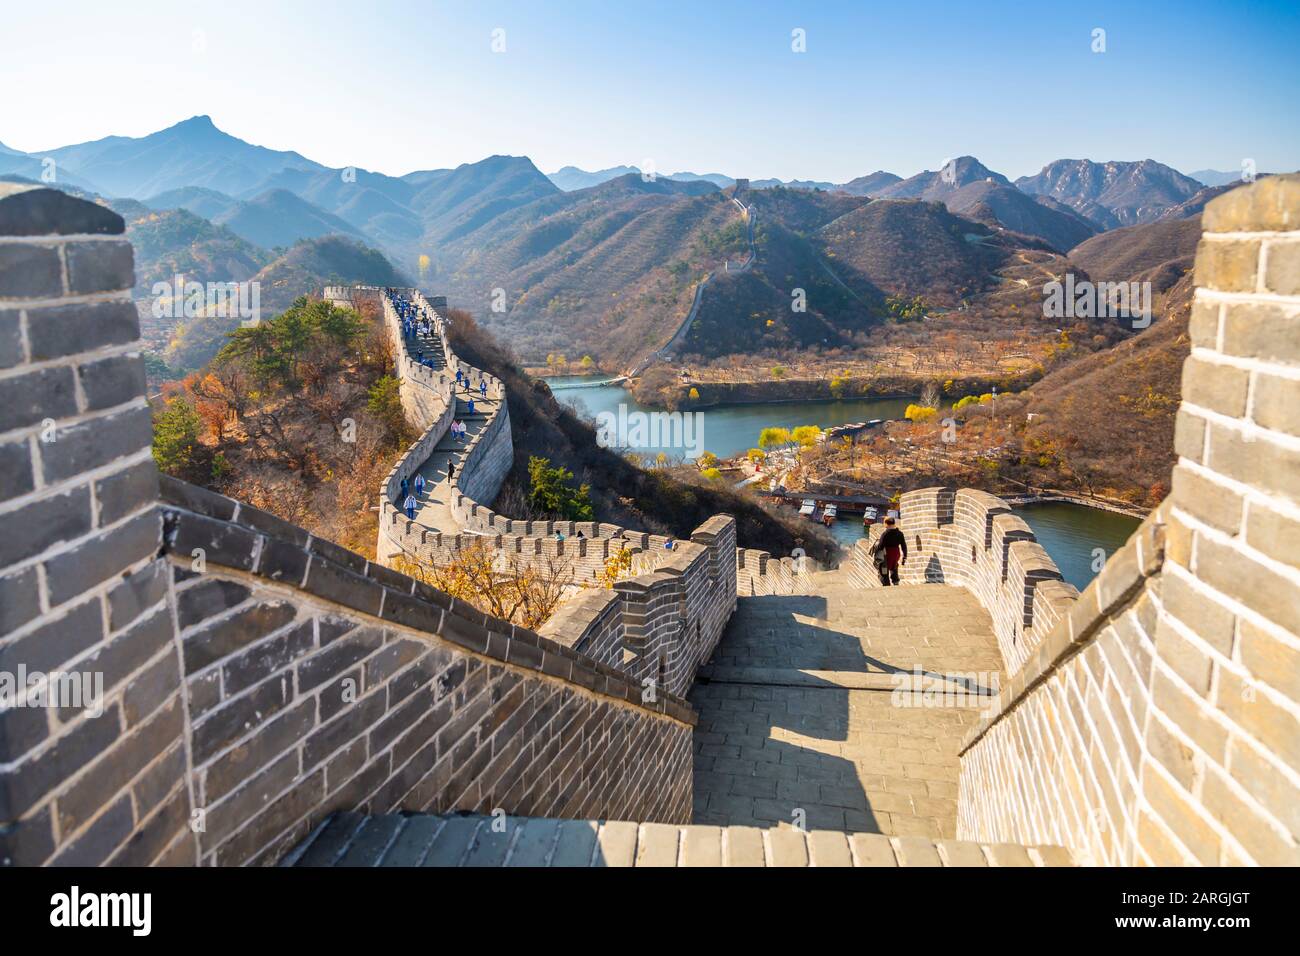 View of Great Wall of China at Huanghua Cheng (Yellow Flower), UNESCO World Heritage Site, Xishulyu, Jiuduhe Zhen, Huairou, People's Republic of China Stock Photo